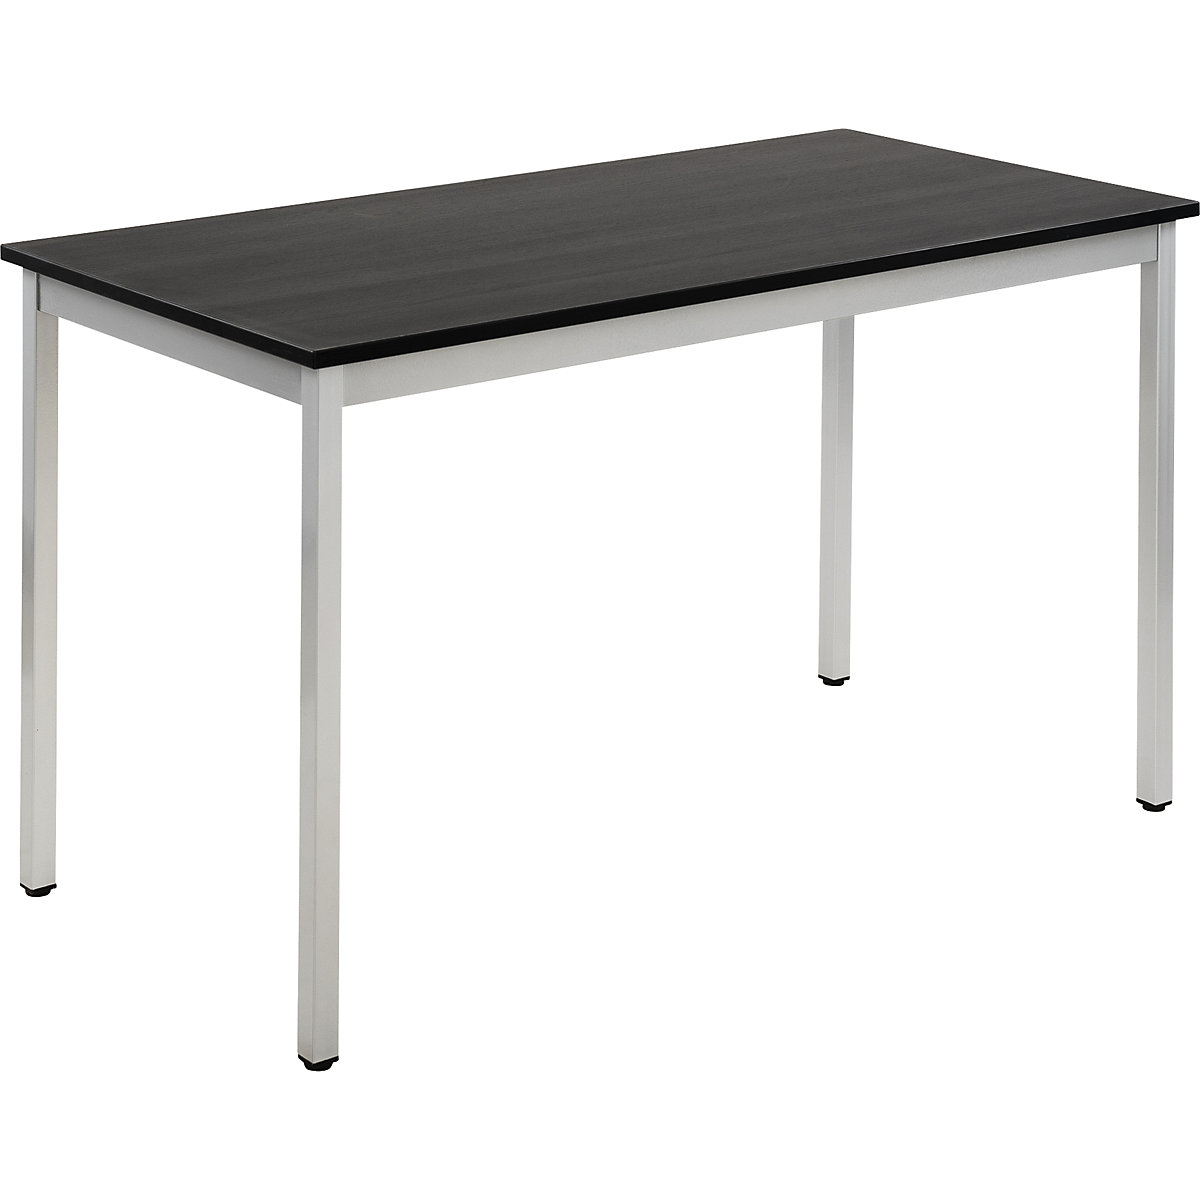 Víceúčelový stůl – eurokraft basic, obdélníkový tvar, š x v 1200 x 740 mm, hloubka 600 mm, deska v jasanovém dekoru tmavá šedá, podstavec v barvě bílý hliník-19